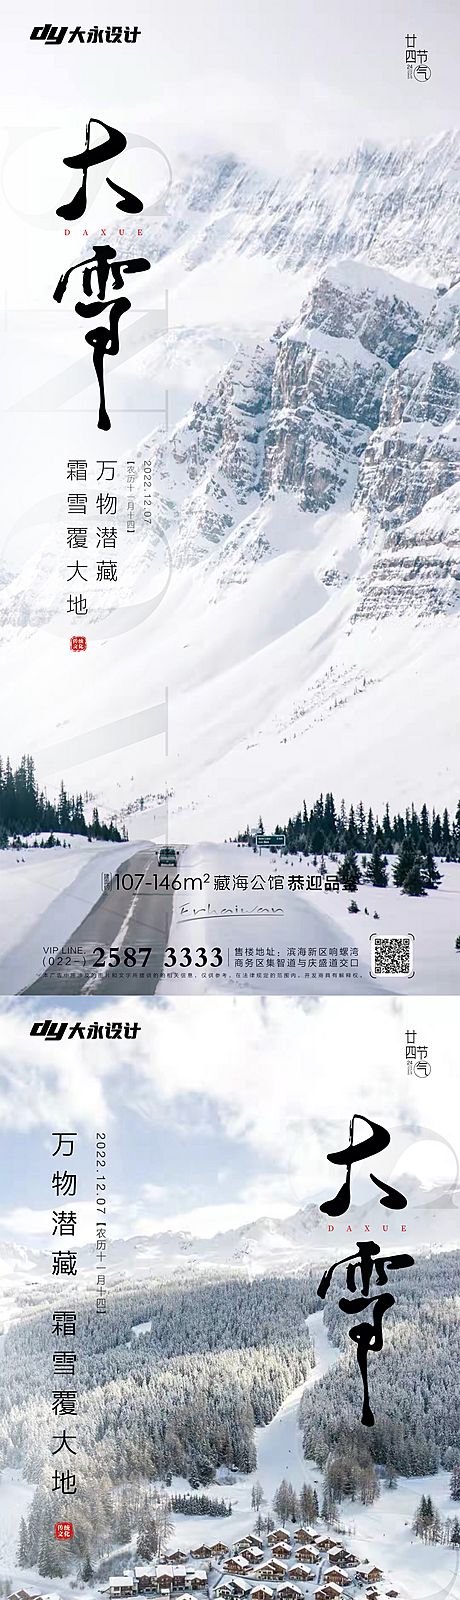 仙图网-小雪大雪房地产海报